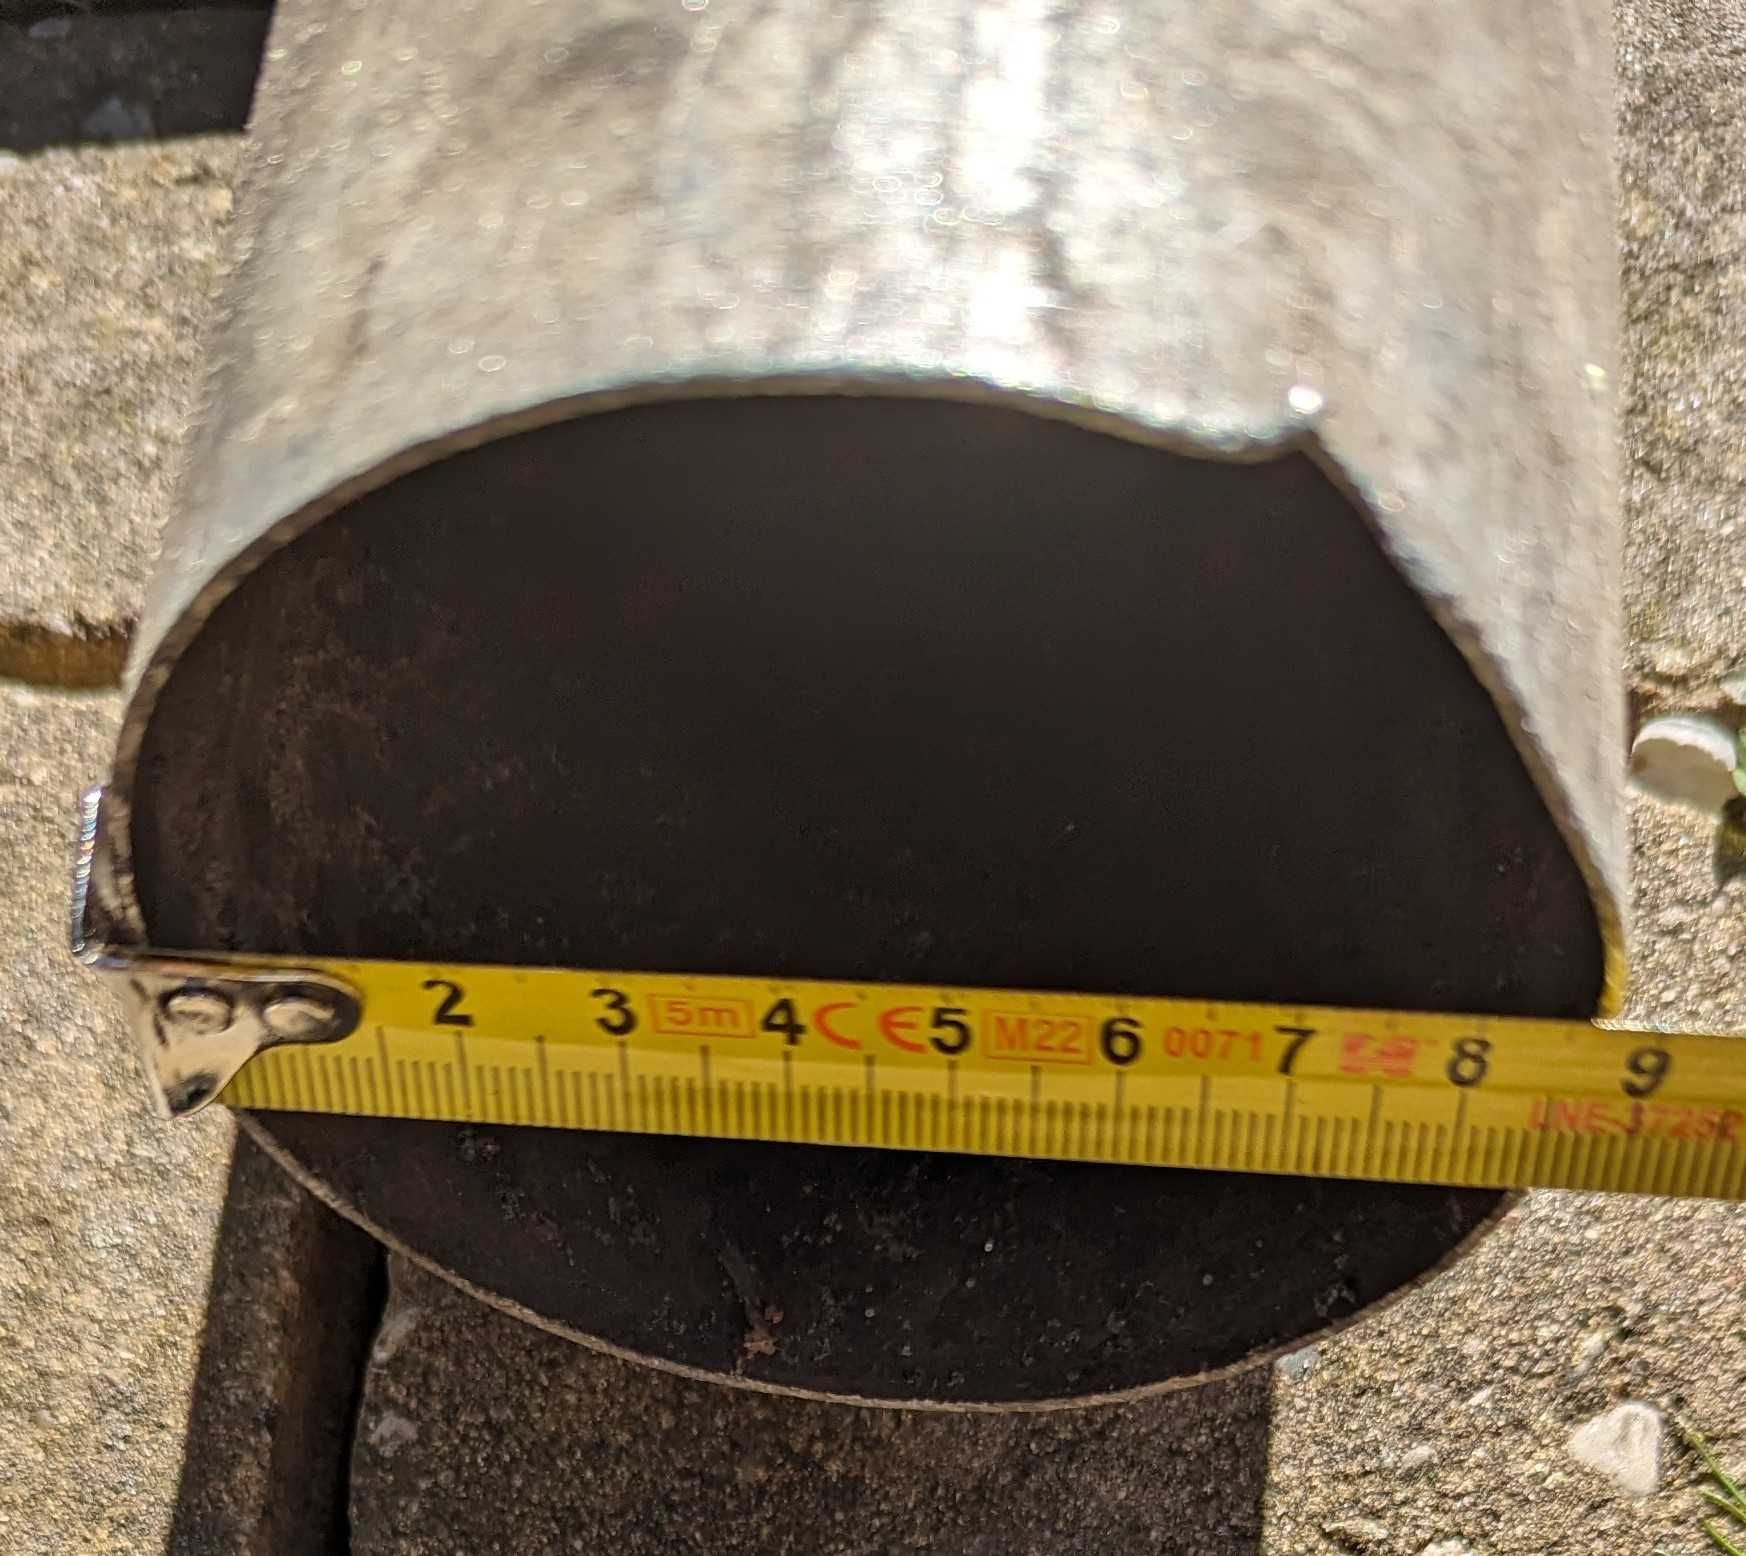 Komin stalowy, rura długość 590 cm średnica 9 cm